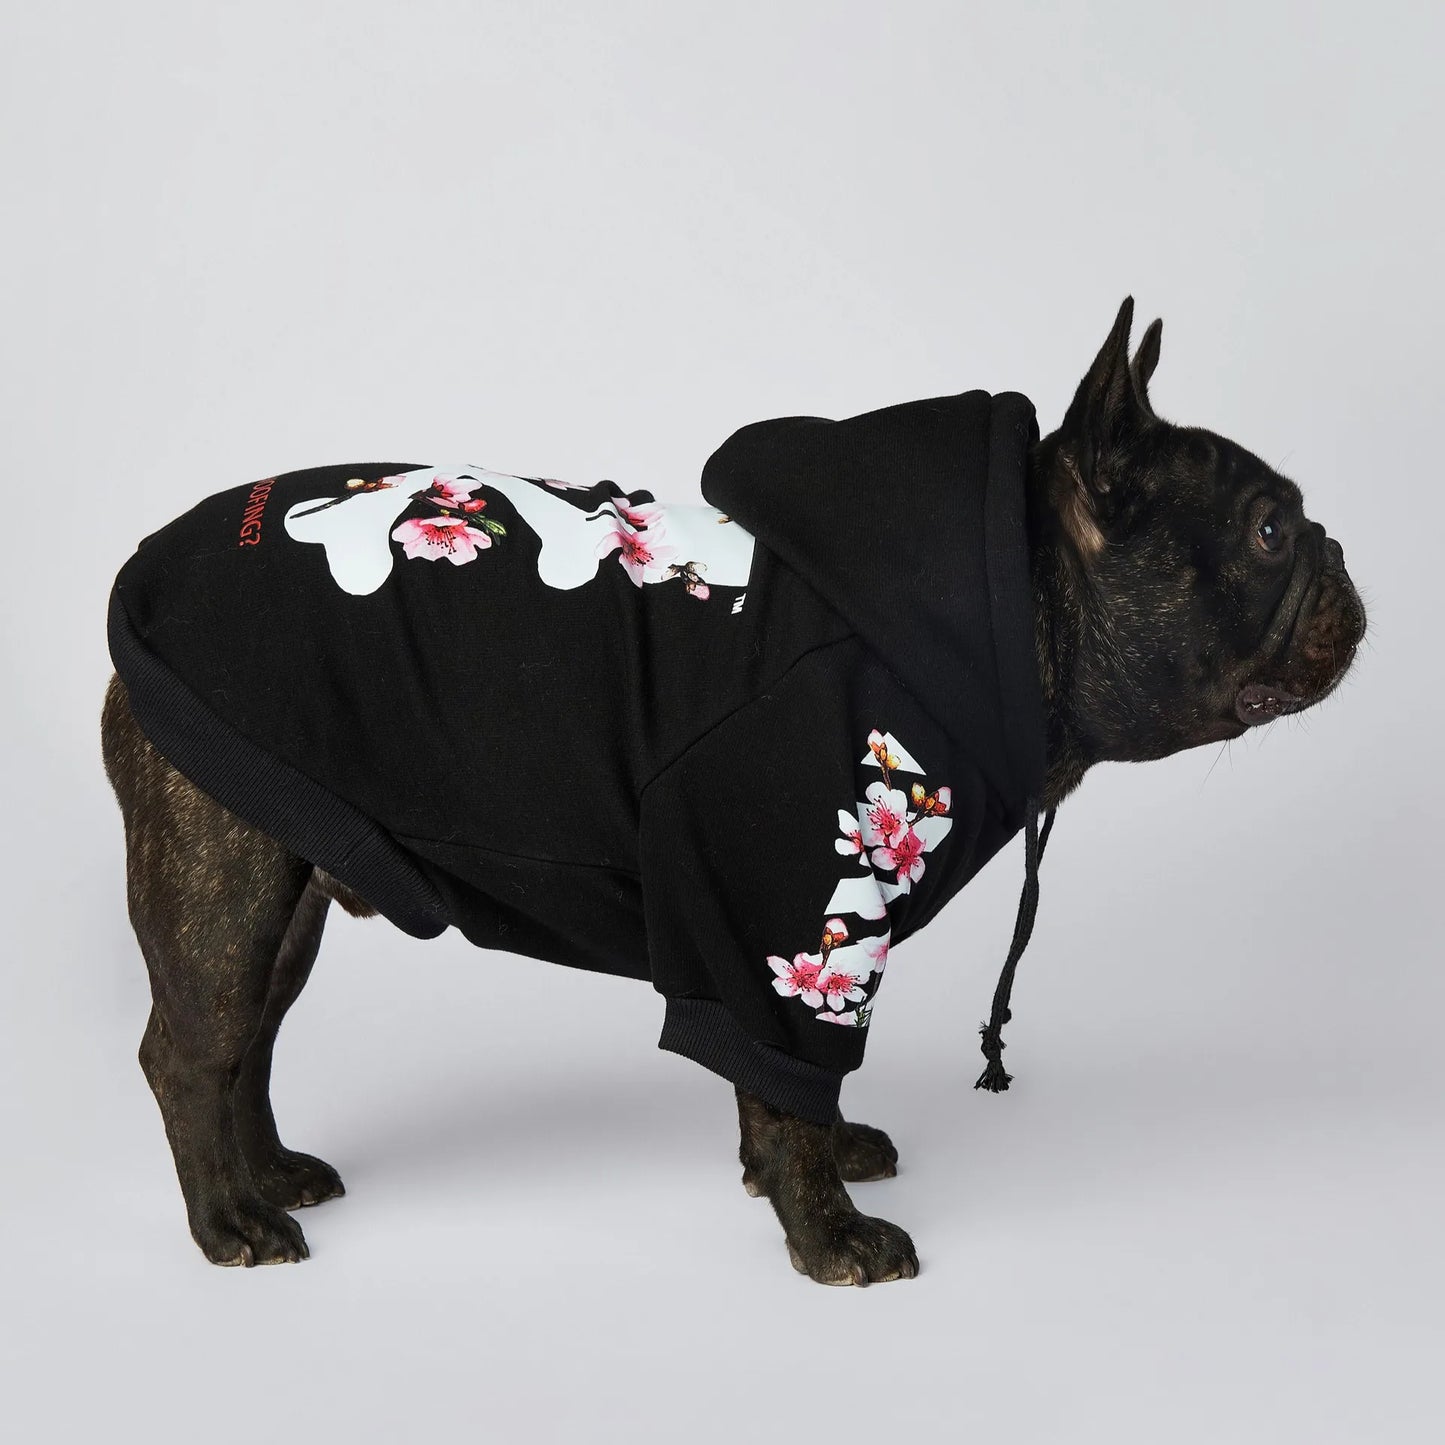 NONOR Dog Clothes WOOF Fashion Sakura Dog Jacket Pet Dog Hoodies Winter French Bulldog Pugs Sports Dog Jacket M-4XL